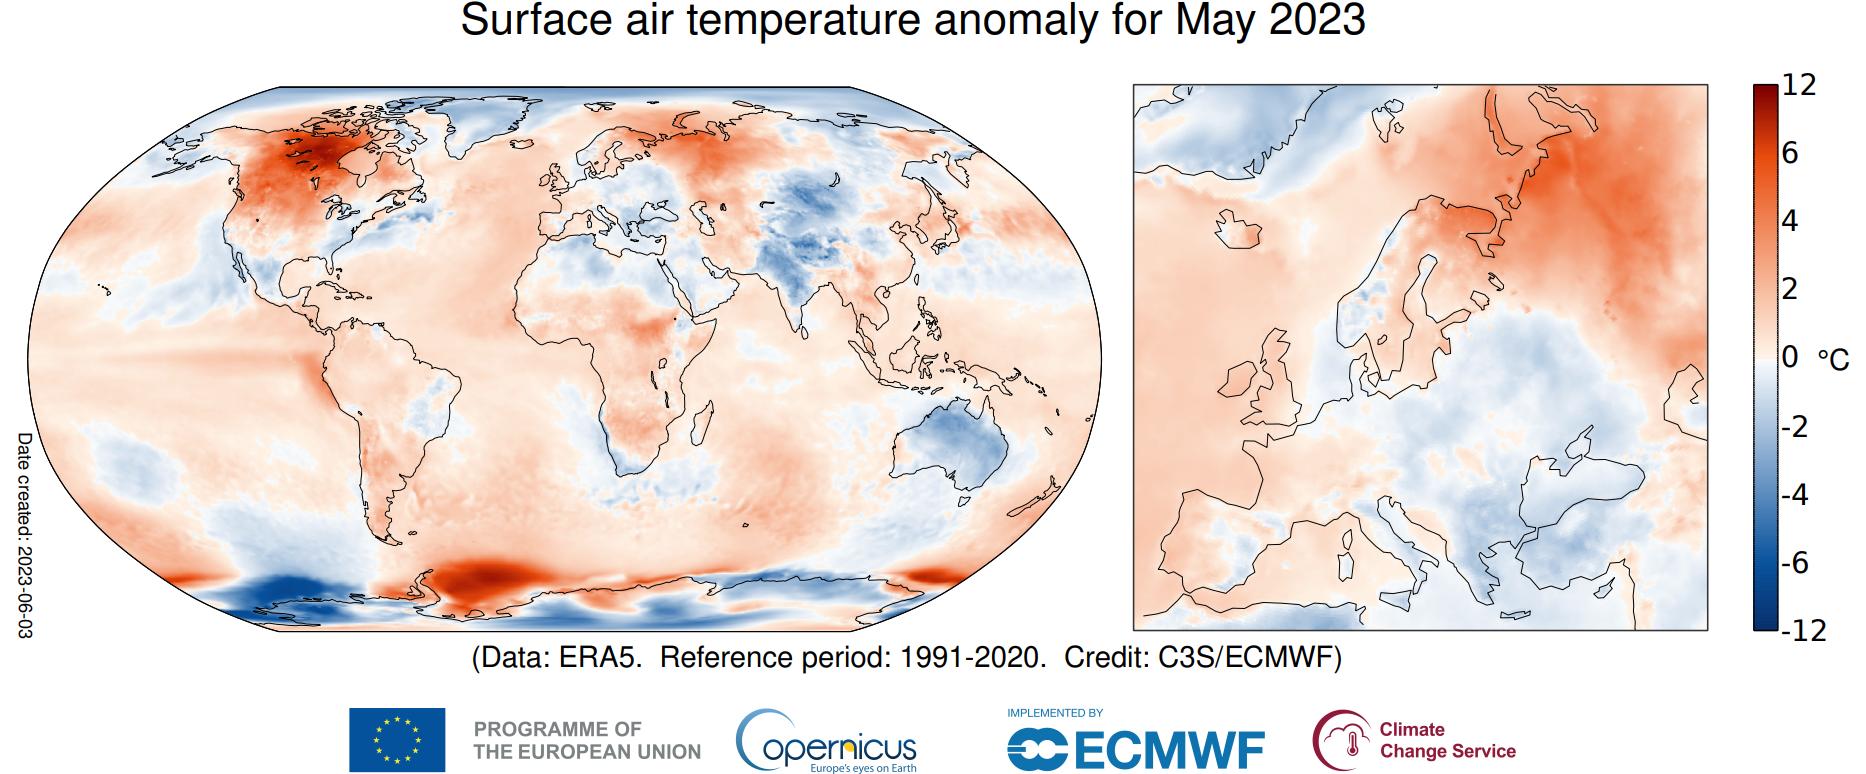 Anomalia da temperatura do ar à superfície para maio de 2023 em relação à média no período 1991-2020. Fonte: Copernicus Climate Change Service/ECMWF